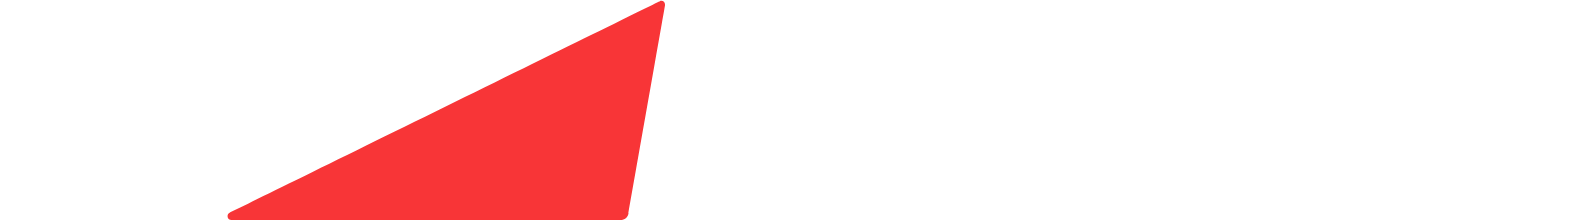 Middleby logo large for dark backgrounds (transparent PNG)